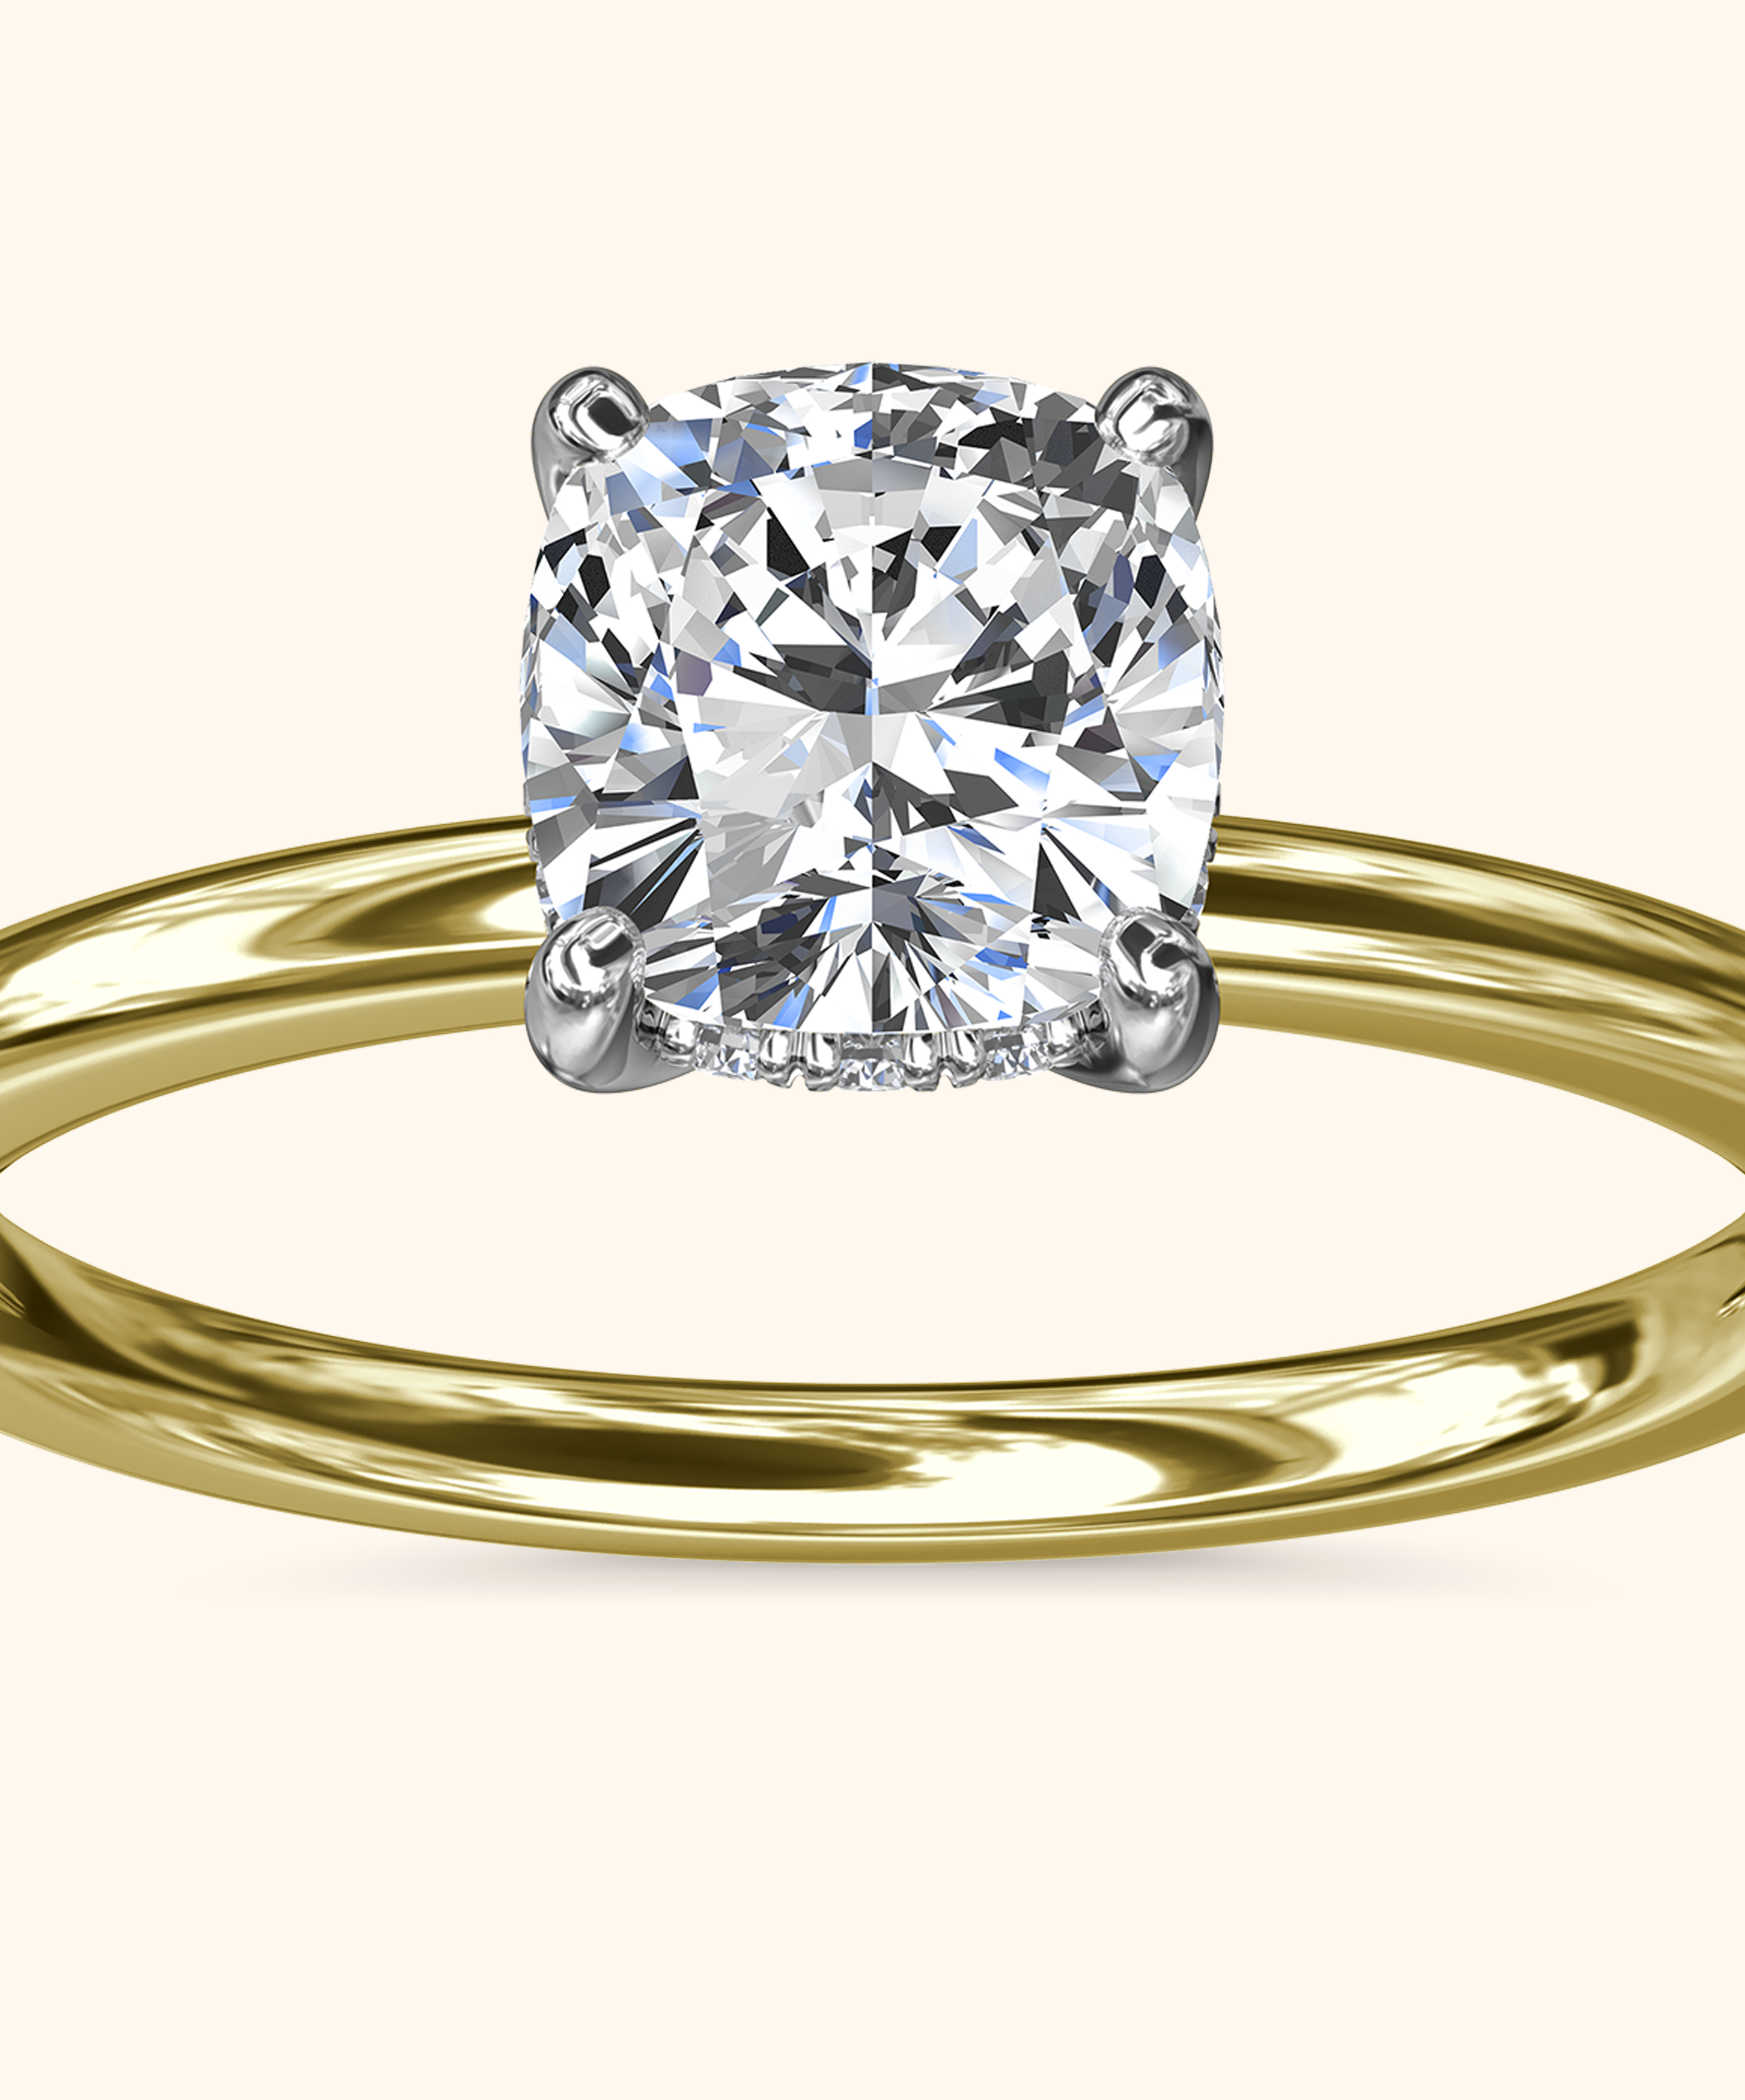 Engagement Rings For Women